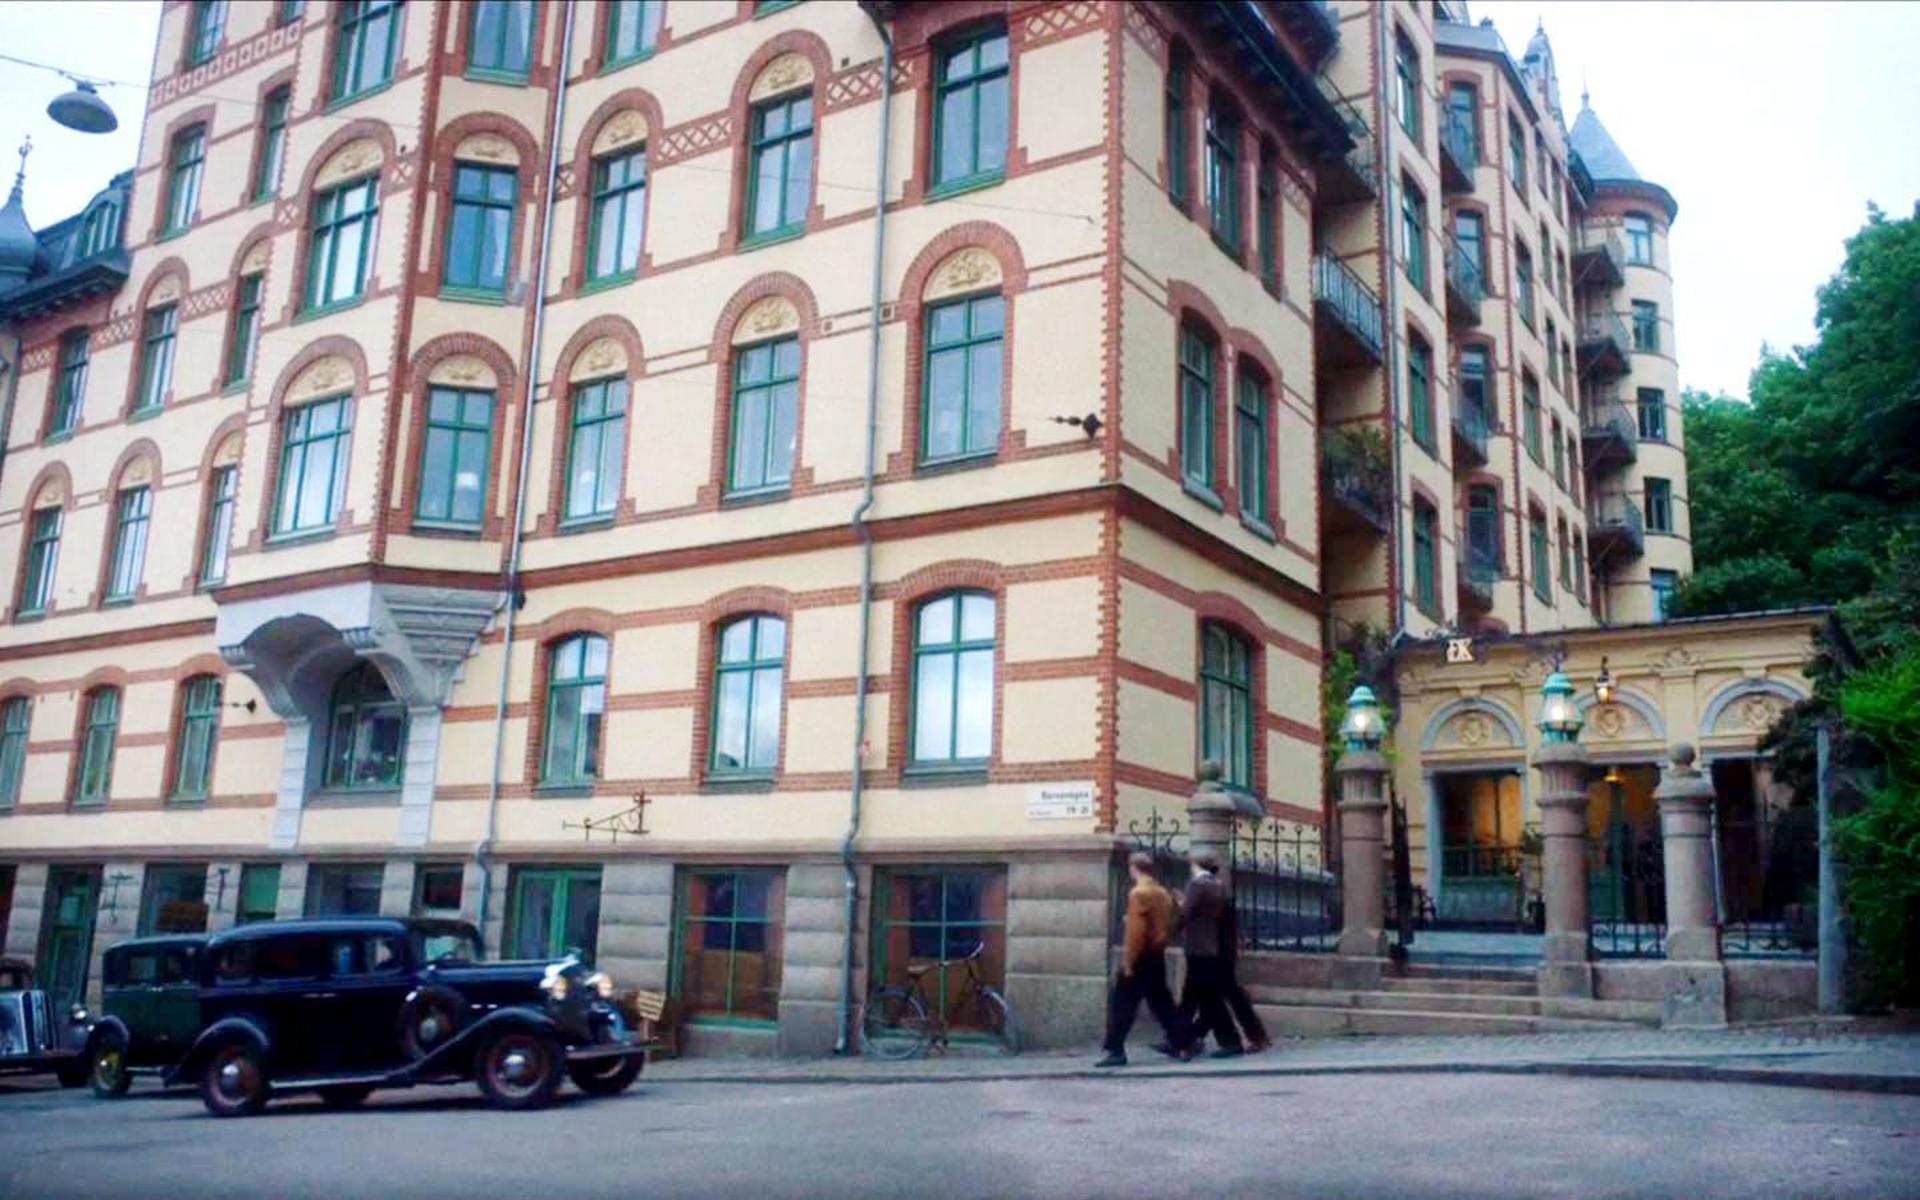 I tv-serien ”Vår tid är nu” syns fastigheten på Haga Kyrkogatan 28 i princip alla avsnitt, för där låg restaurang Djurgårdskällaren. Bilden är från tv-serien.